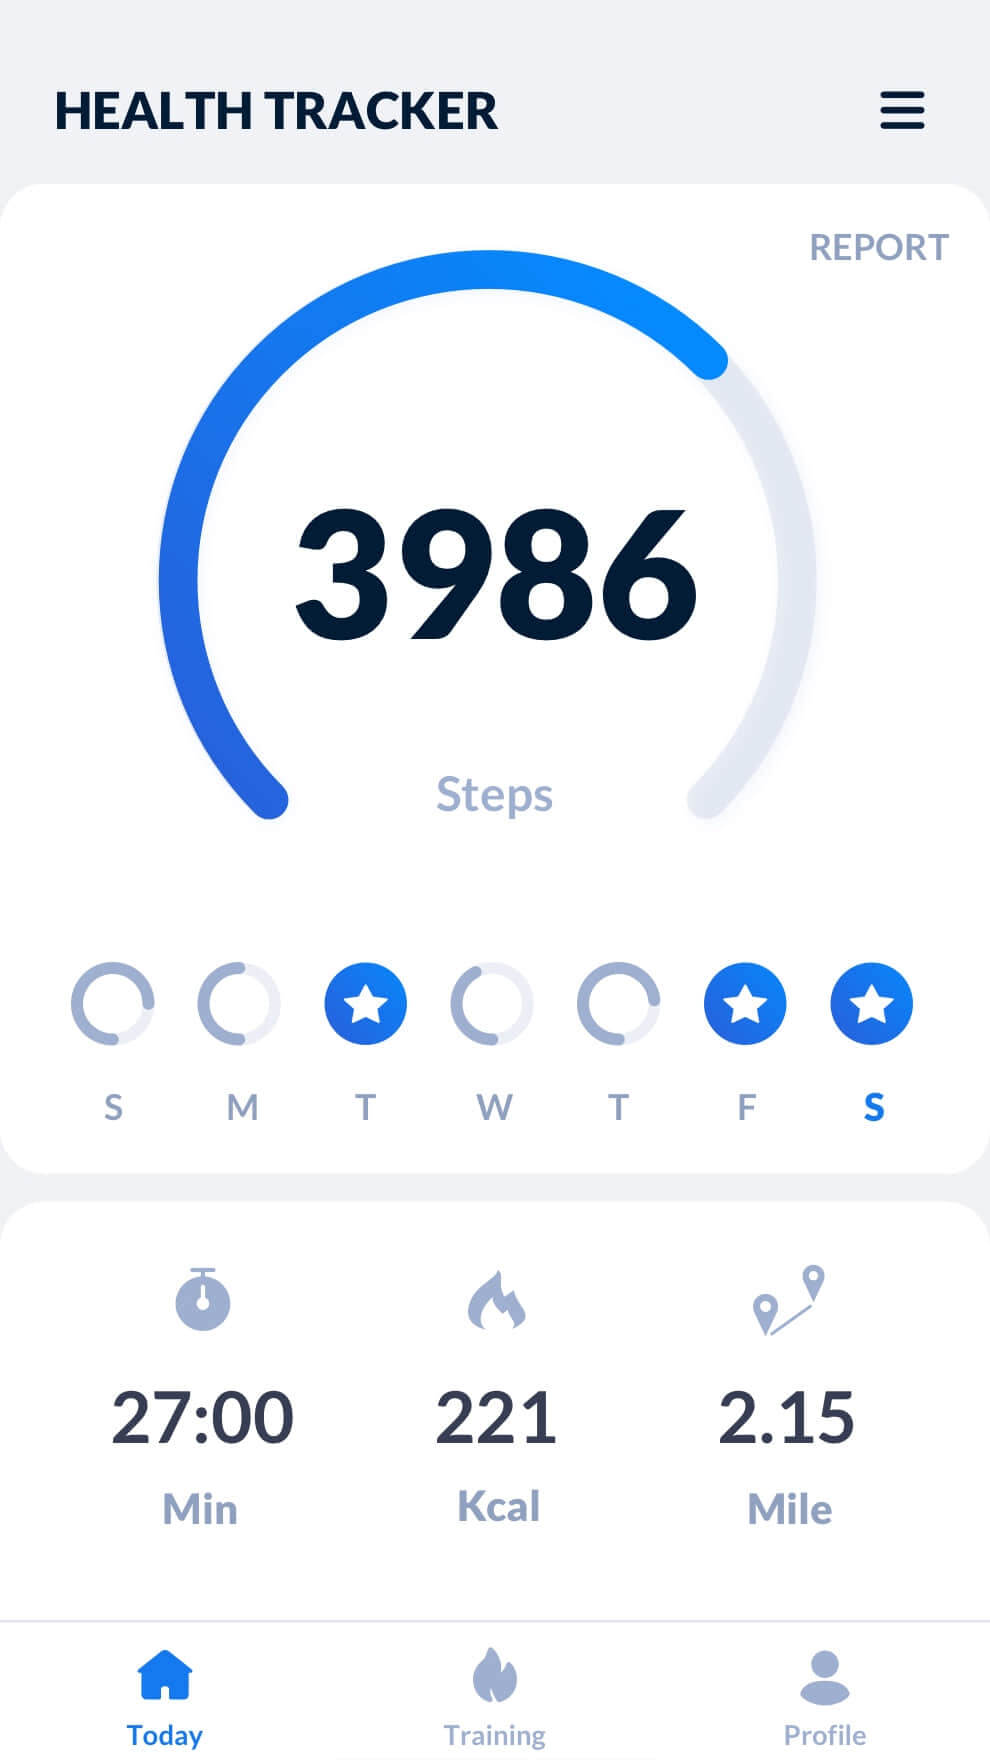 Step Tracker – Pedometer